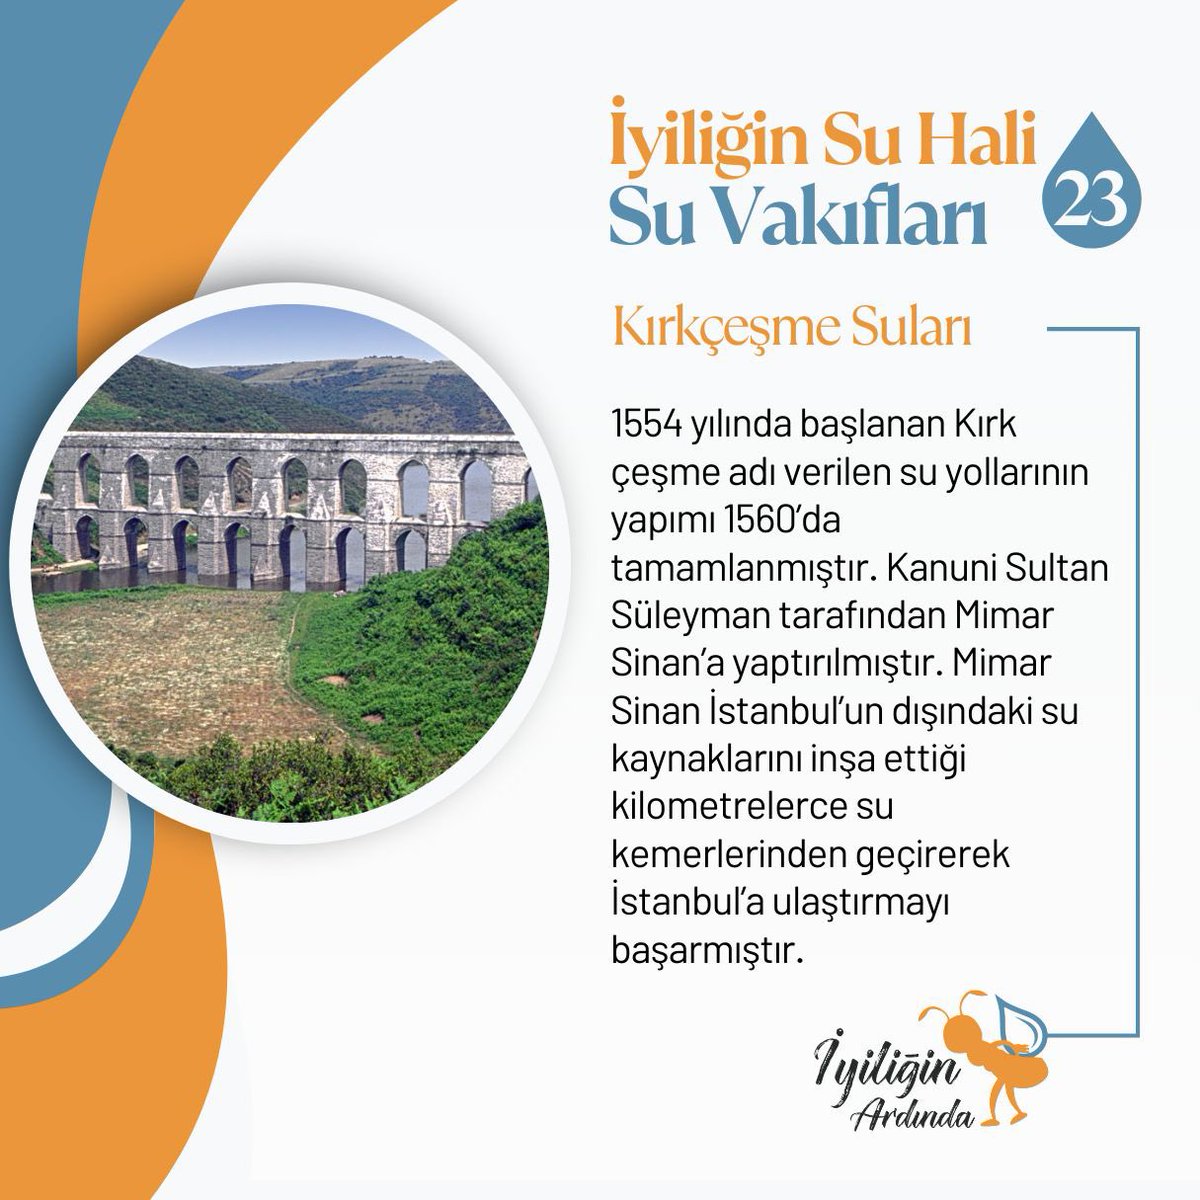 𝗜̇𝘆𝗶𝗹𝗶𝗴̆𝗶𝗻 𝗦𝘂 𝗛𝗮𝗹𝗶: 𝕊𝕦 𝕍𝕒𝕜ı𝕗𝕝𝕒𝕣ı 💧 2️⃣3️⃣Kırkçeşme Suları Kanuni Sultan Süleyman tarafından Mimar Sinan’a yaptırılmıştır. İstanbul’un dışındaki su kaynaklarını inşa edilen kilometrelerce su kemerlerinden geçirerek İstanbul’a ulaştırmayı başarmışlardır.